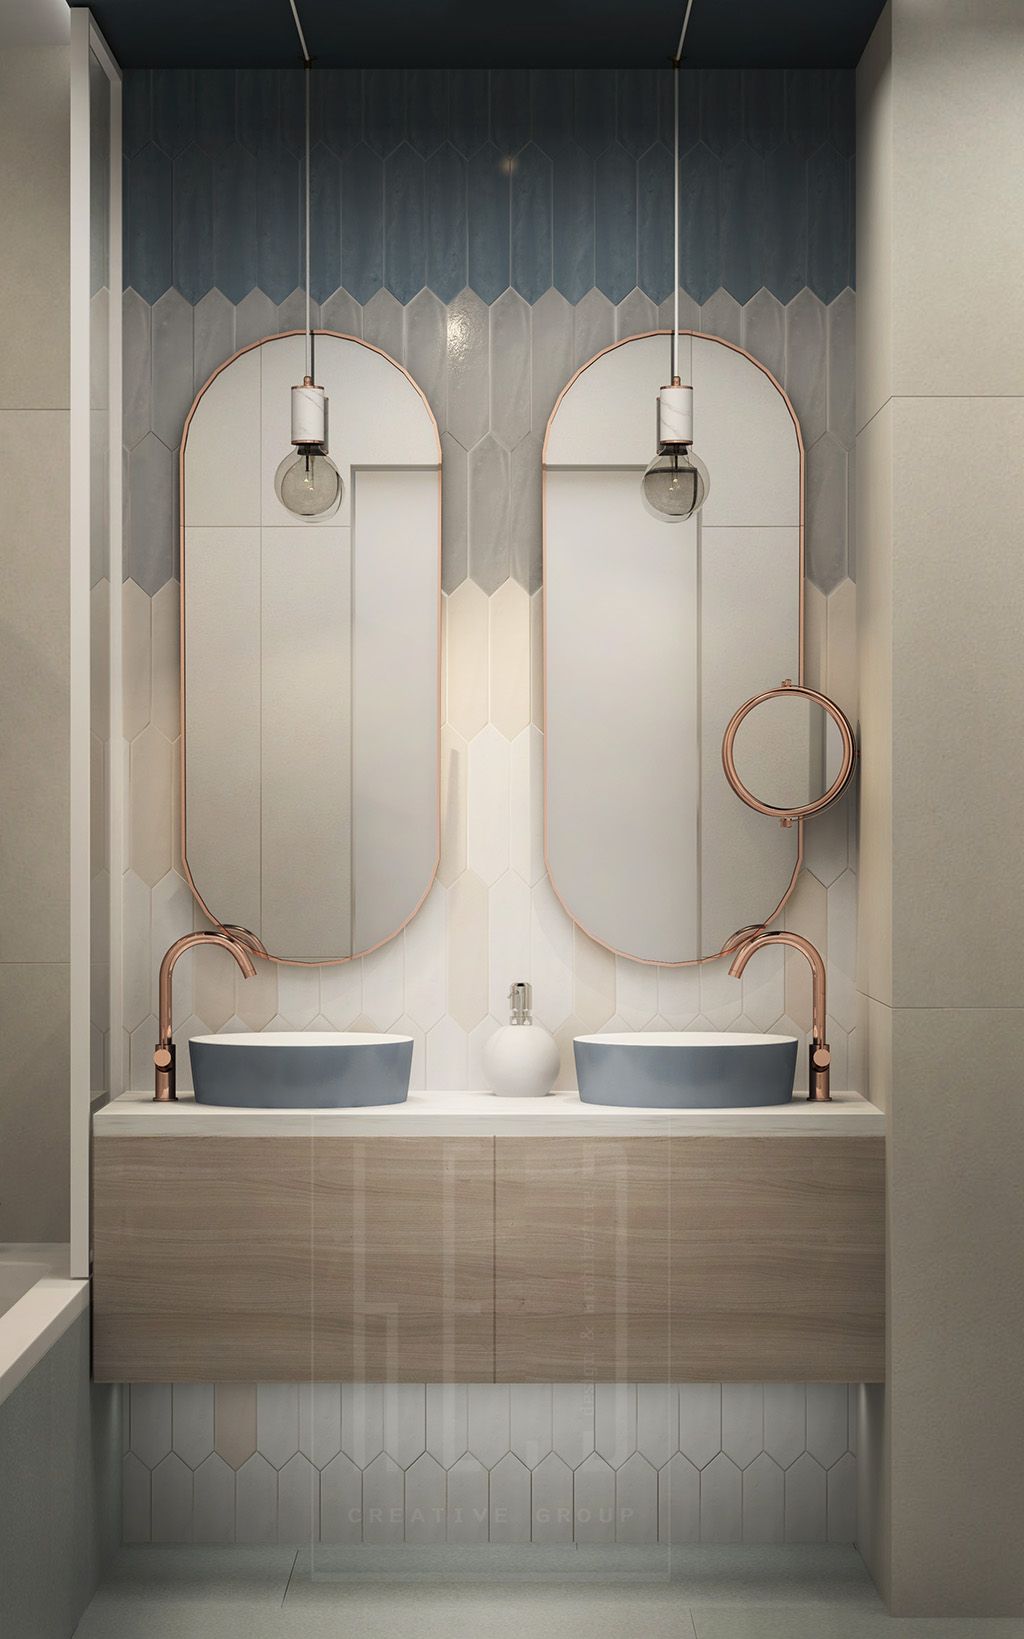 40 Double Sink Bathroom Vanities, Double Vanity Bathroom Designs